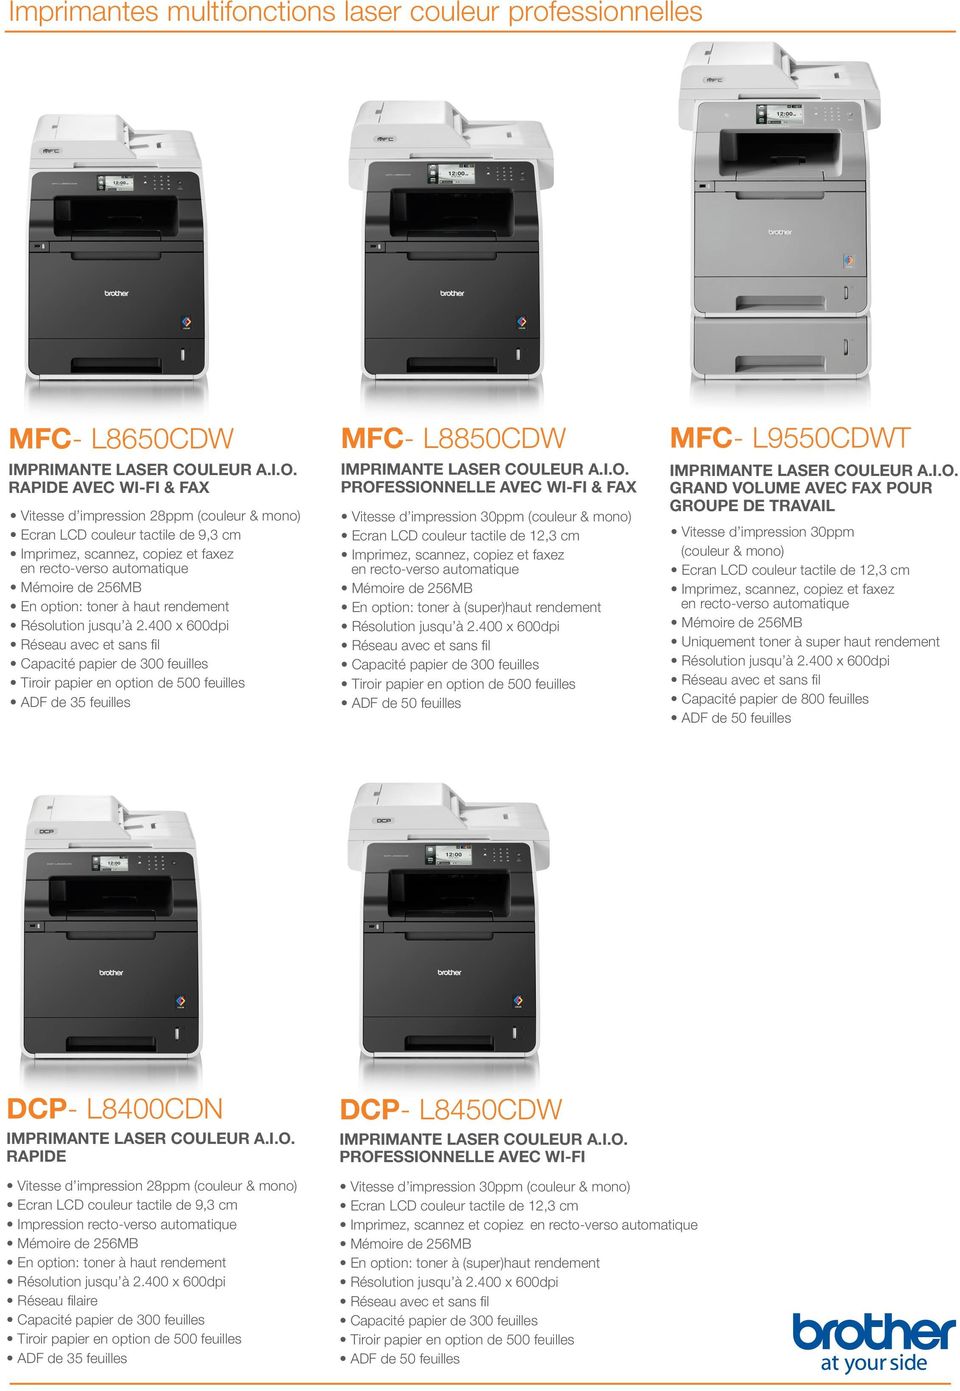 12,3 cm Imprimez, cannez, copiez et faxez en recto-vero automatique En option: toner à (uper) ADF de 50 feuille IMPRIMANTE LASER COU